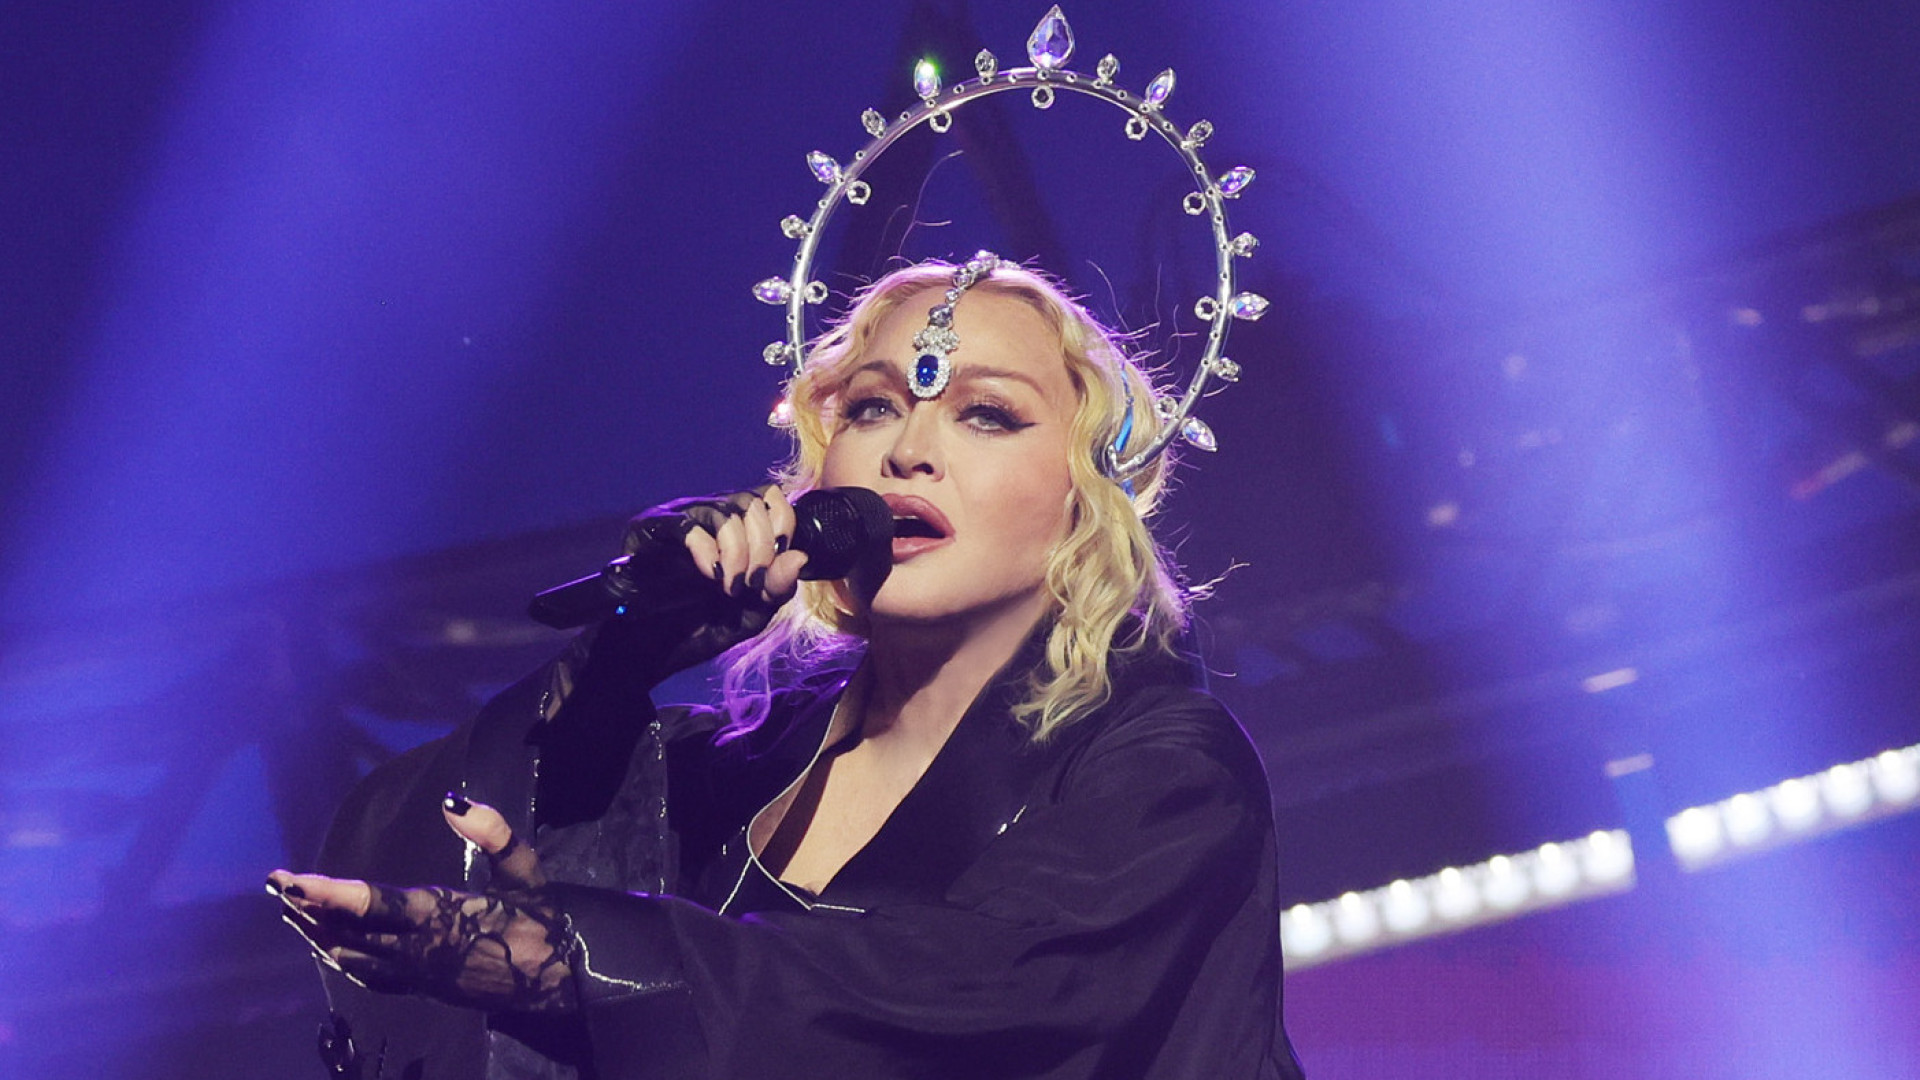 Tradutora da Globo viraliza ao evitar expressões sexuais de Madonna em show